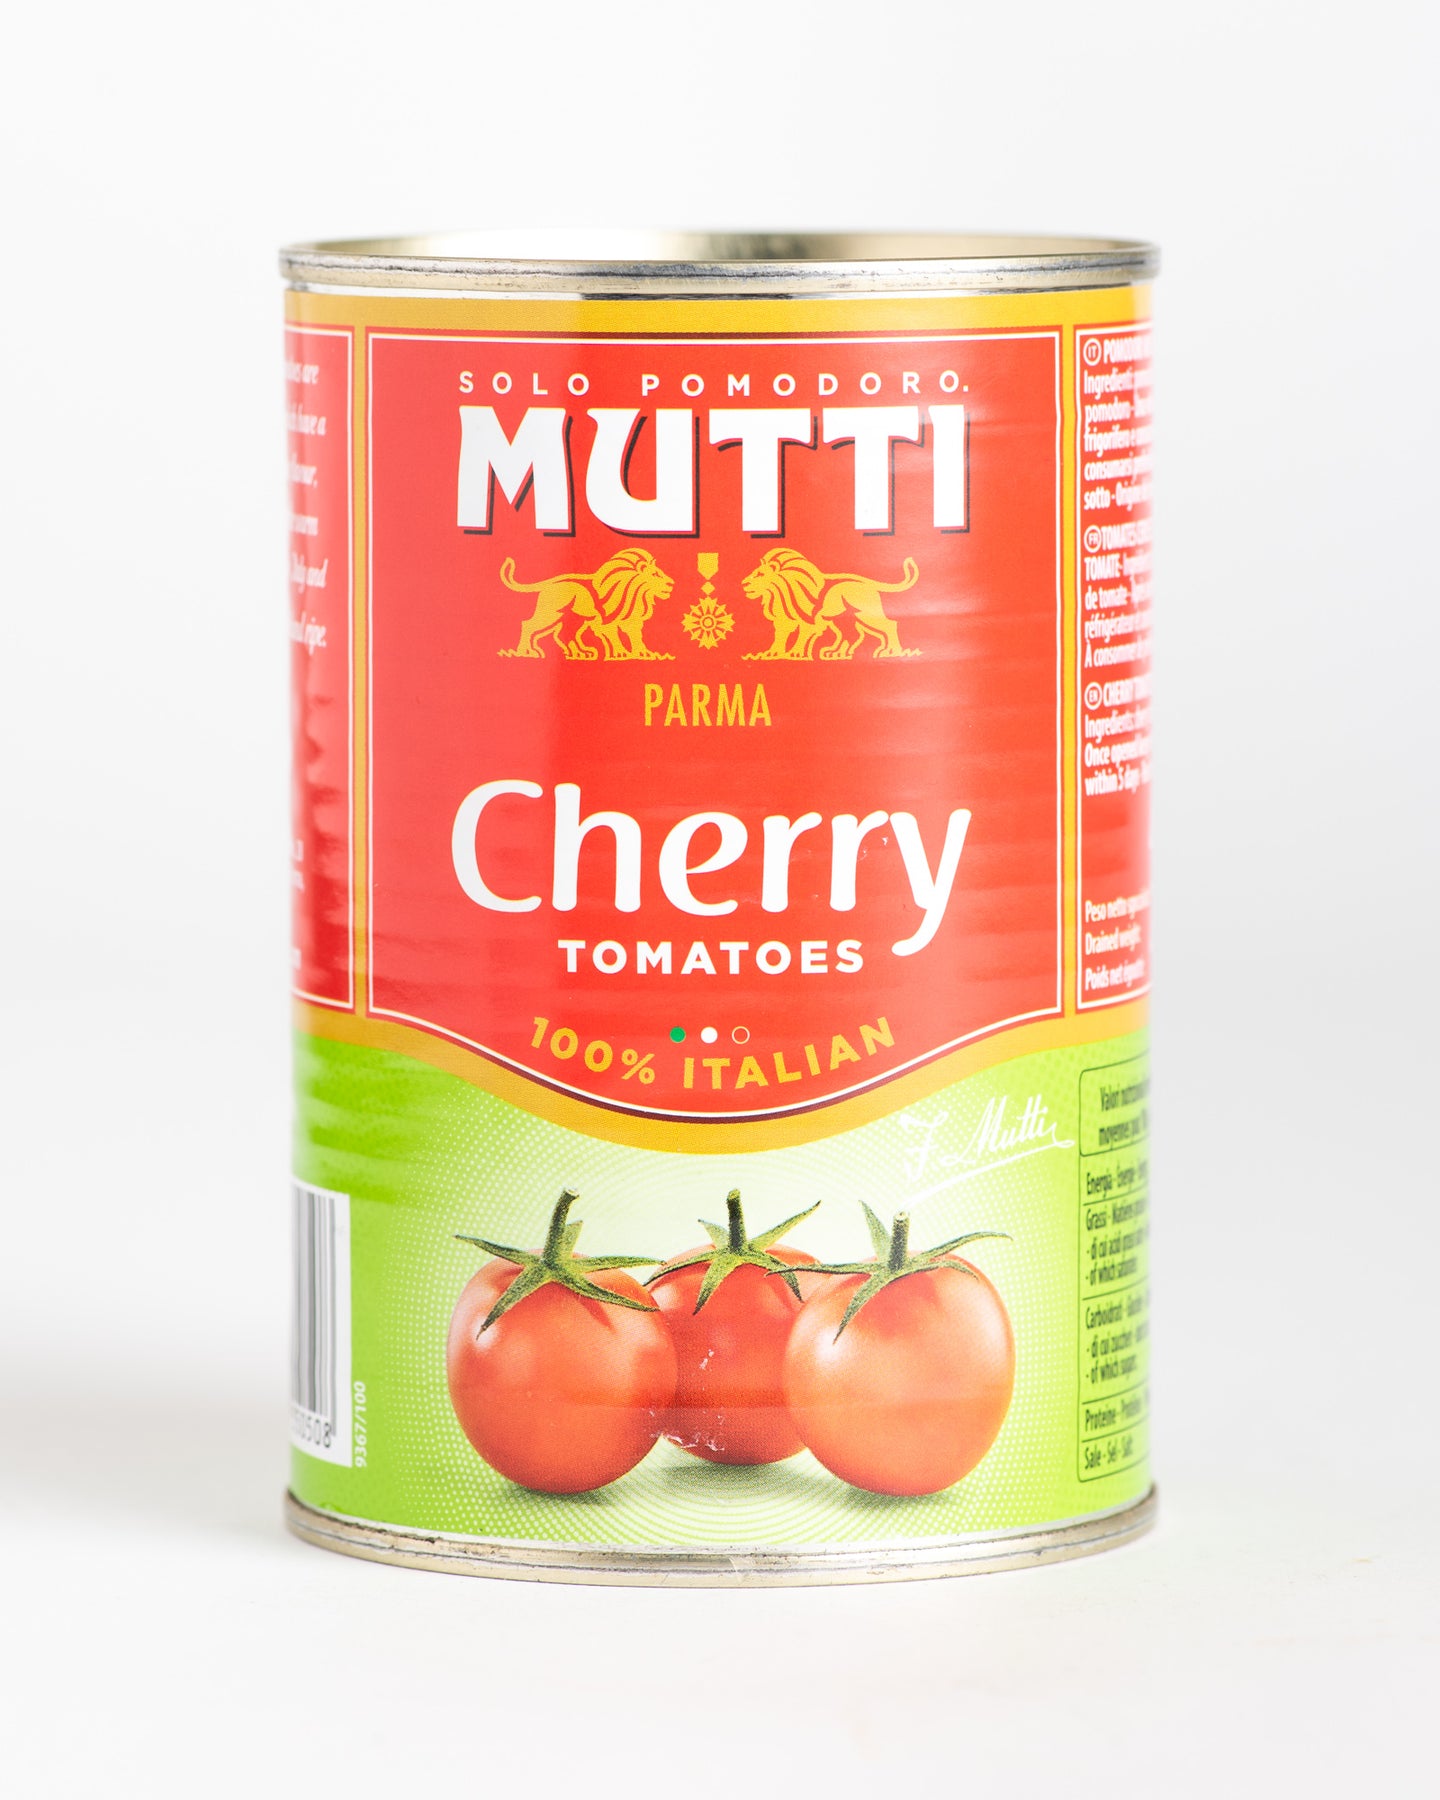 Mutti - Cherry Tomatoes